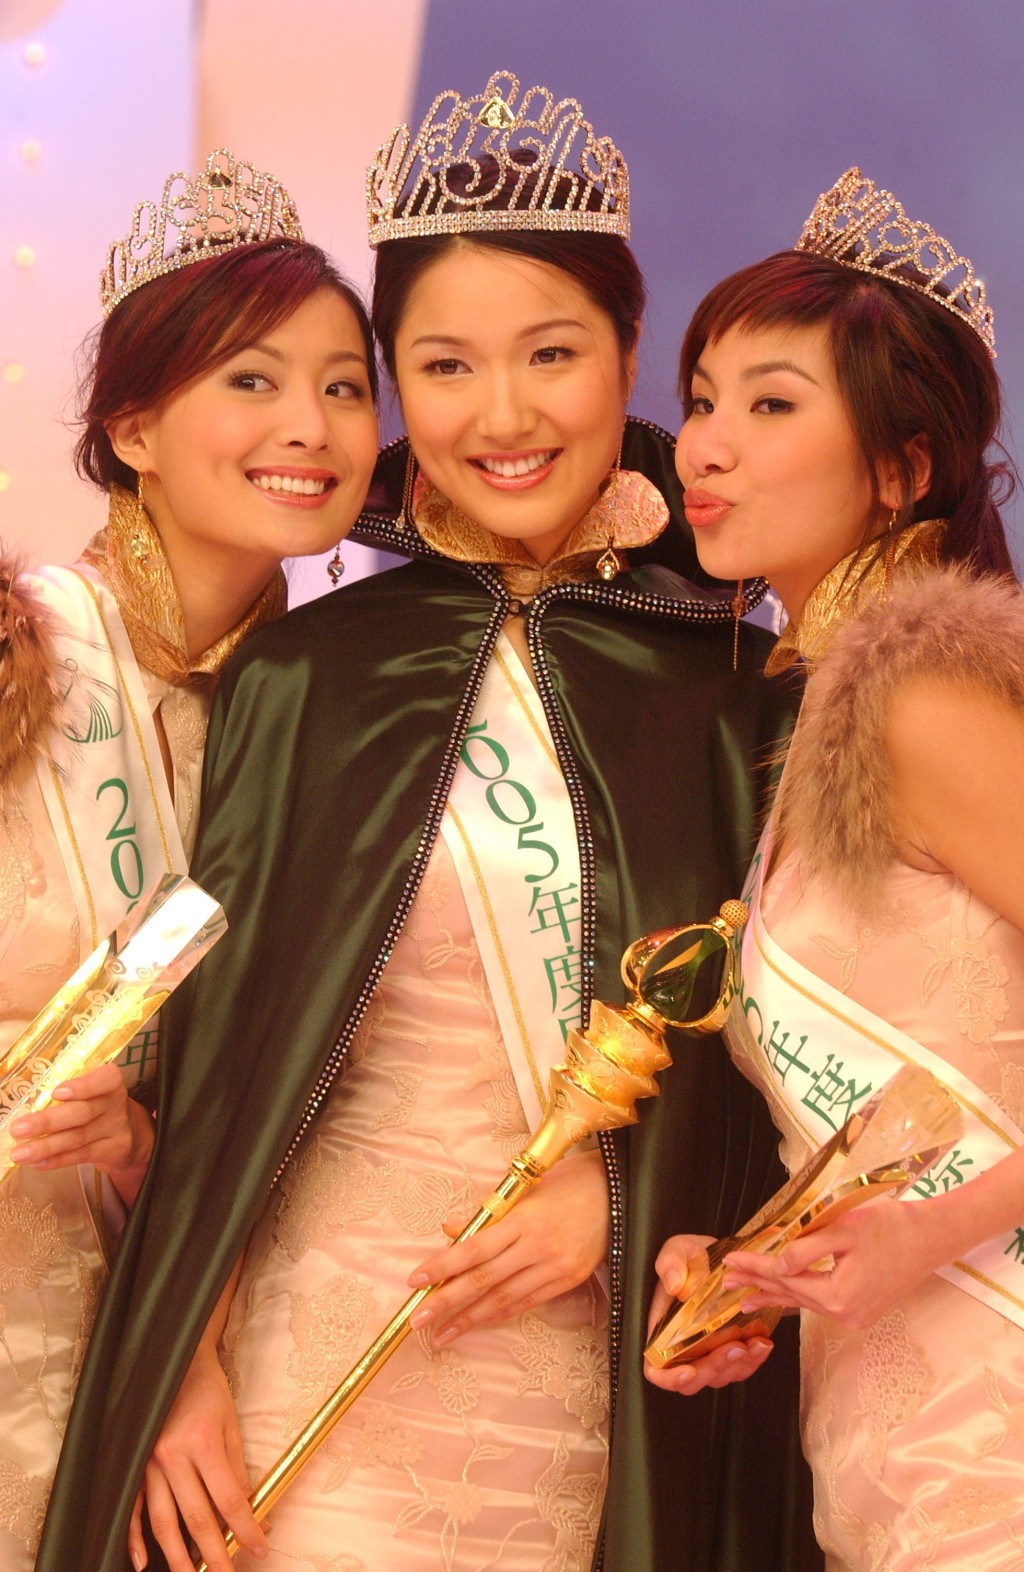 2005年代表纽约来港参加国际华裔小姐竞选，并获得亚军，当年冠军是李亚男。